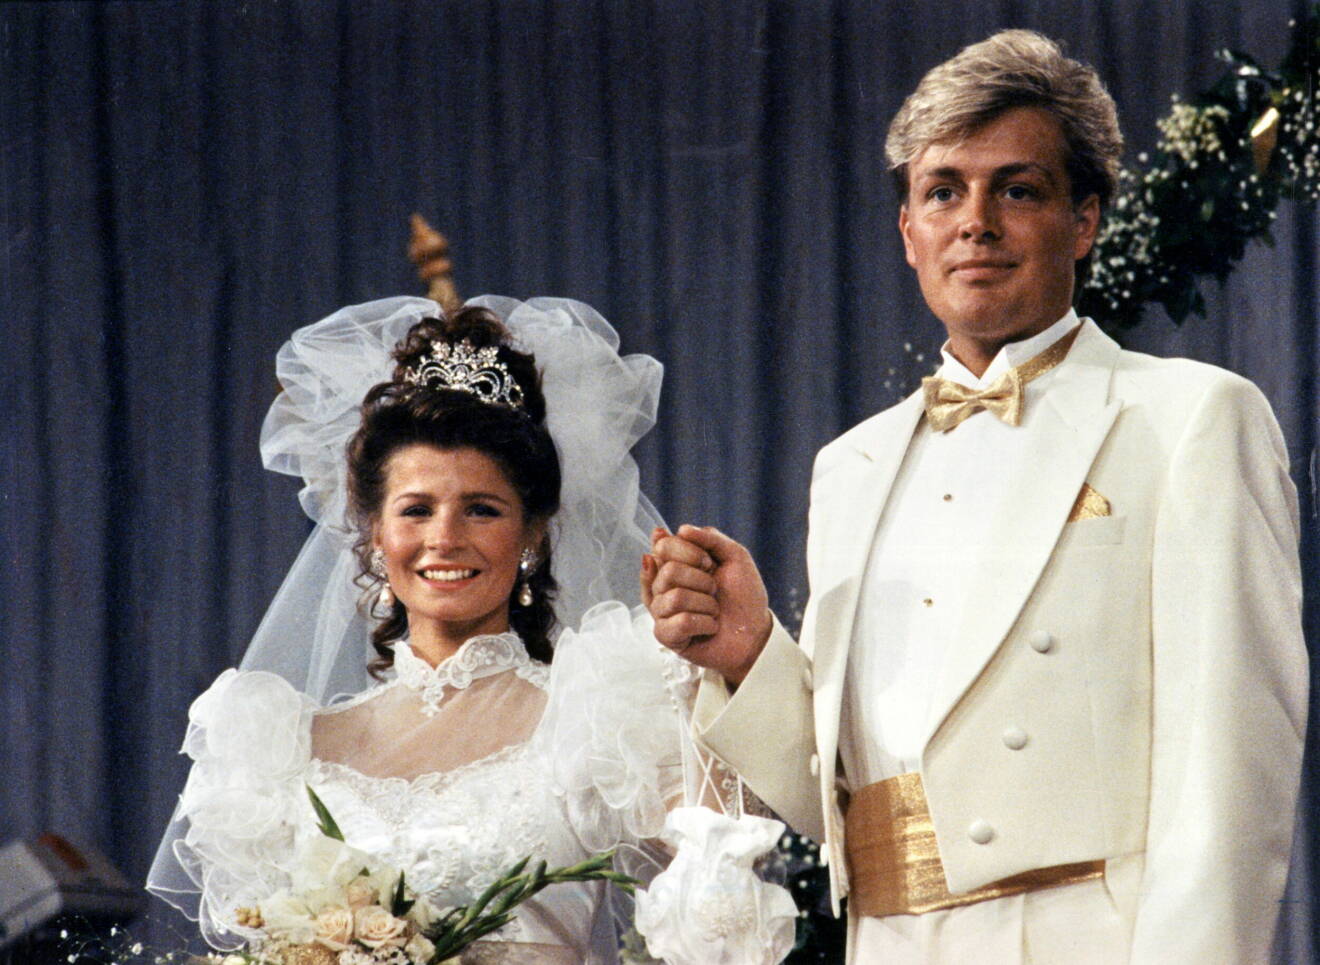 Carola Häggkvist och Runar Sögaard vid bröllopet 1990. Carola i en bröllopsklänning med tyll och spetsdetaljer och Runar i en vit smoking.